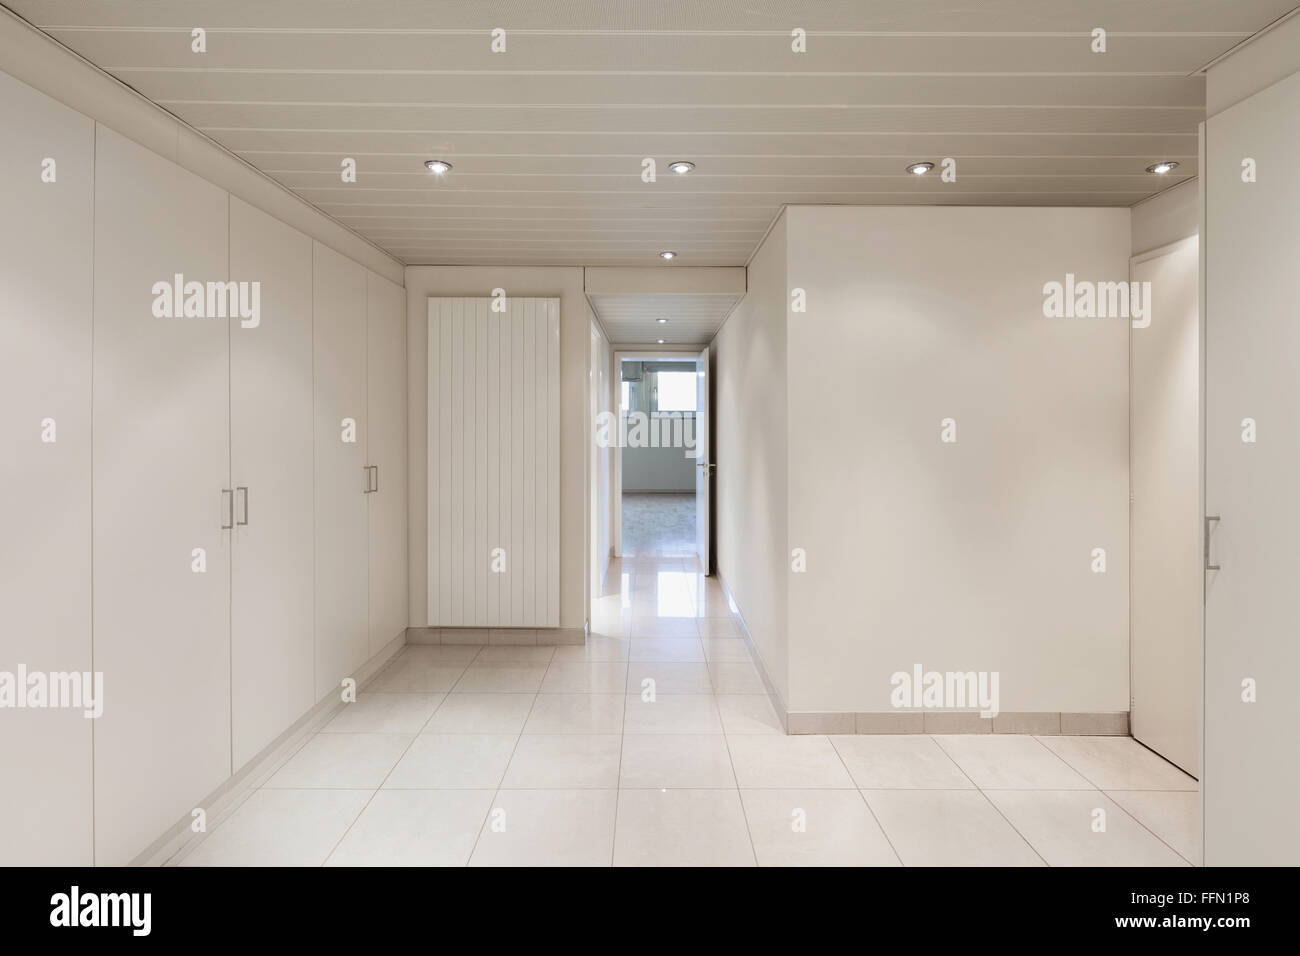 Interior de una casa, la habitación vacía con placares, piso de baldosas  Fotografía de stock - Alamy